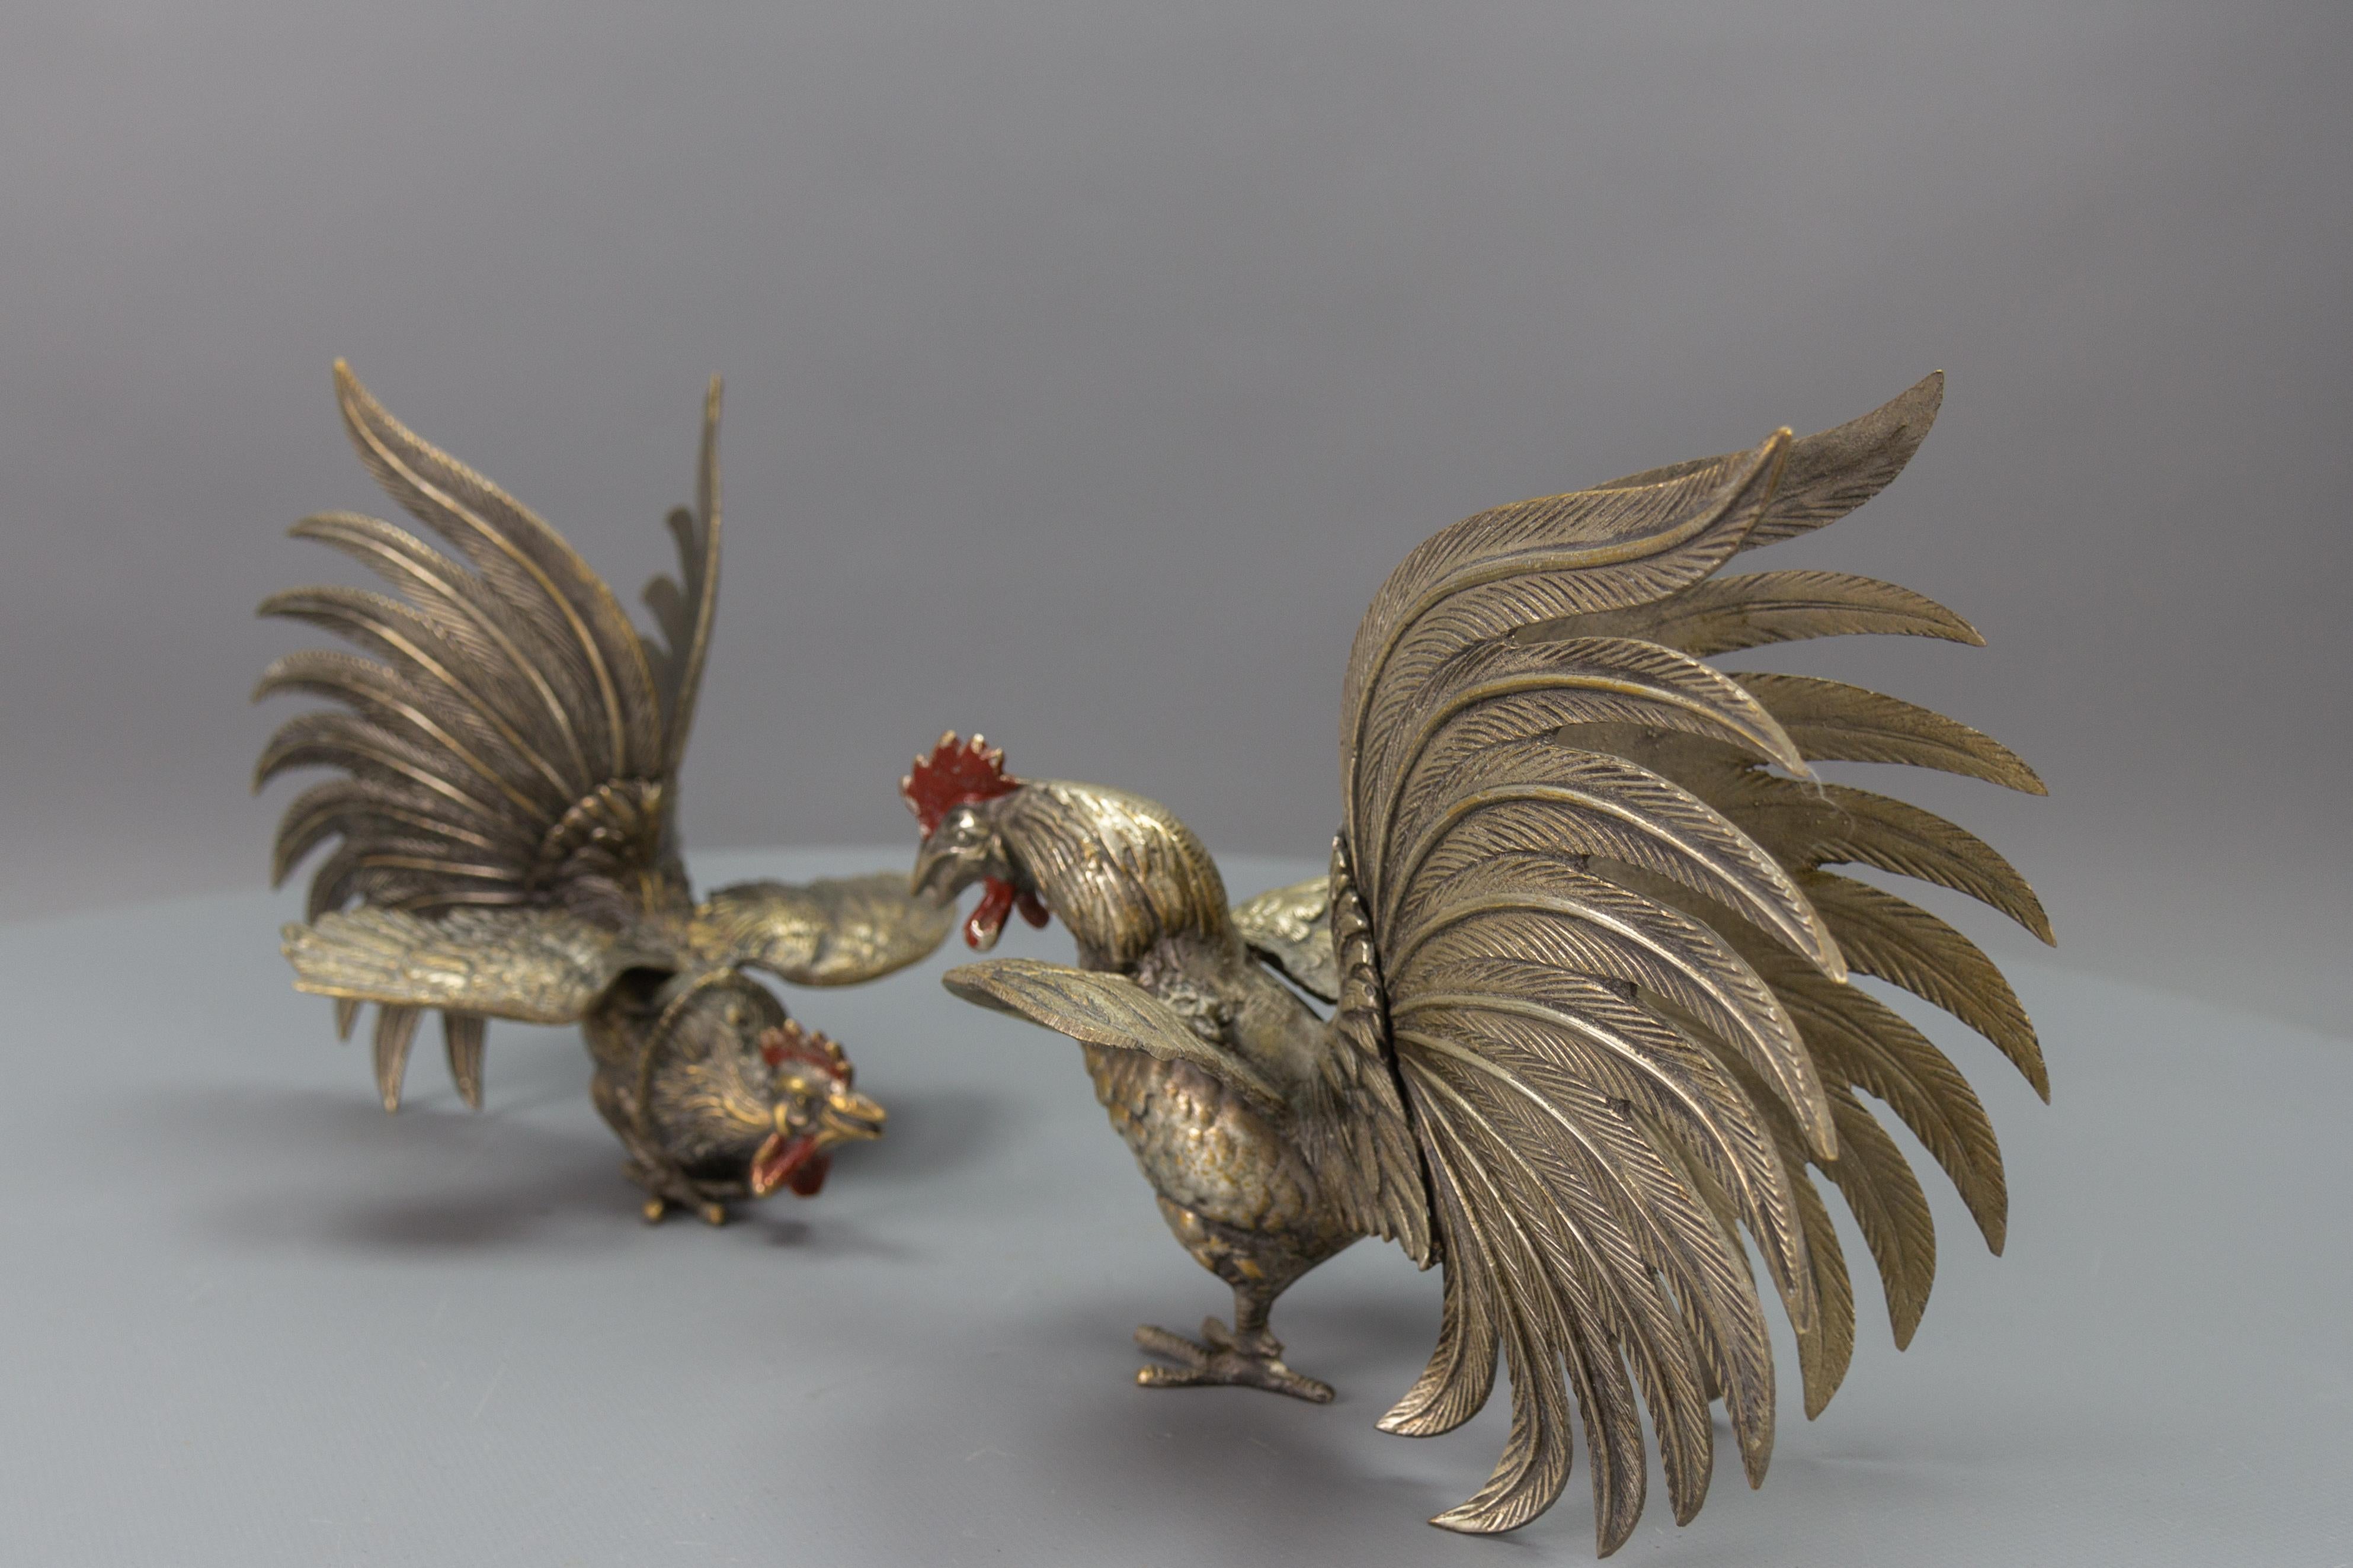 Paire de sculptures en bronze représentant des coqs de combat, Japon, vers les années 1950
Paire de coqs en bronze magnifiquement sculptés et réalistes, avec peignes et caroncules peints en rouge. Ces impressionnantes sculptures d'oiseaux